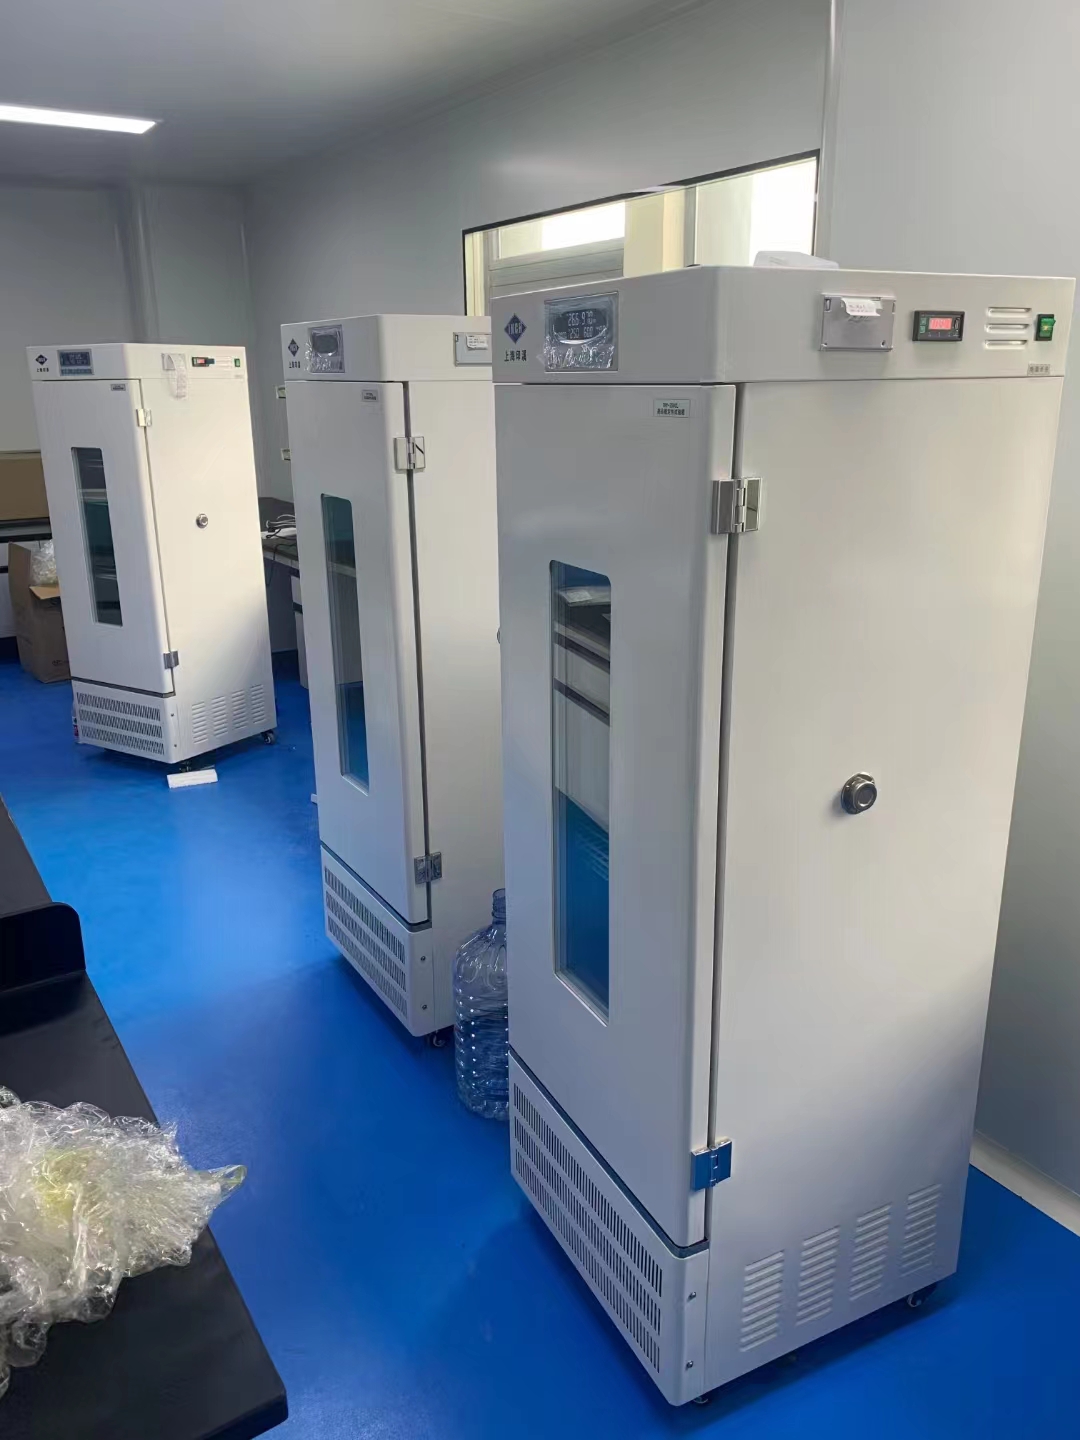 上海市纺织科学研究院有限公司购买精密型恒温恒湿箱并进行现场安装调试